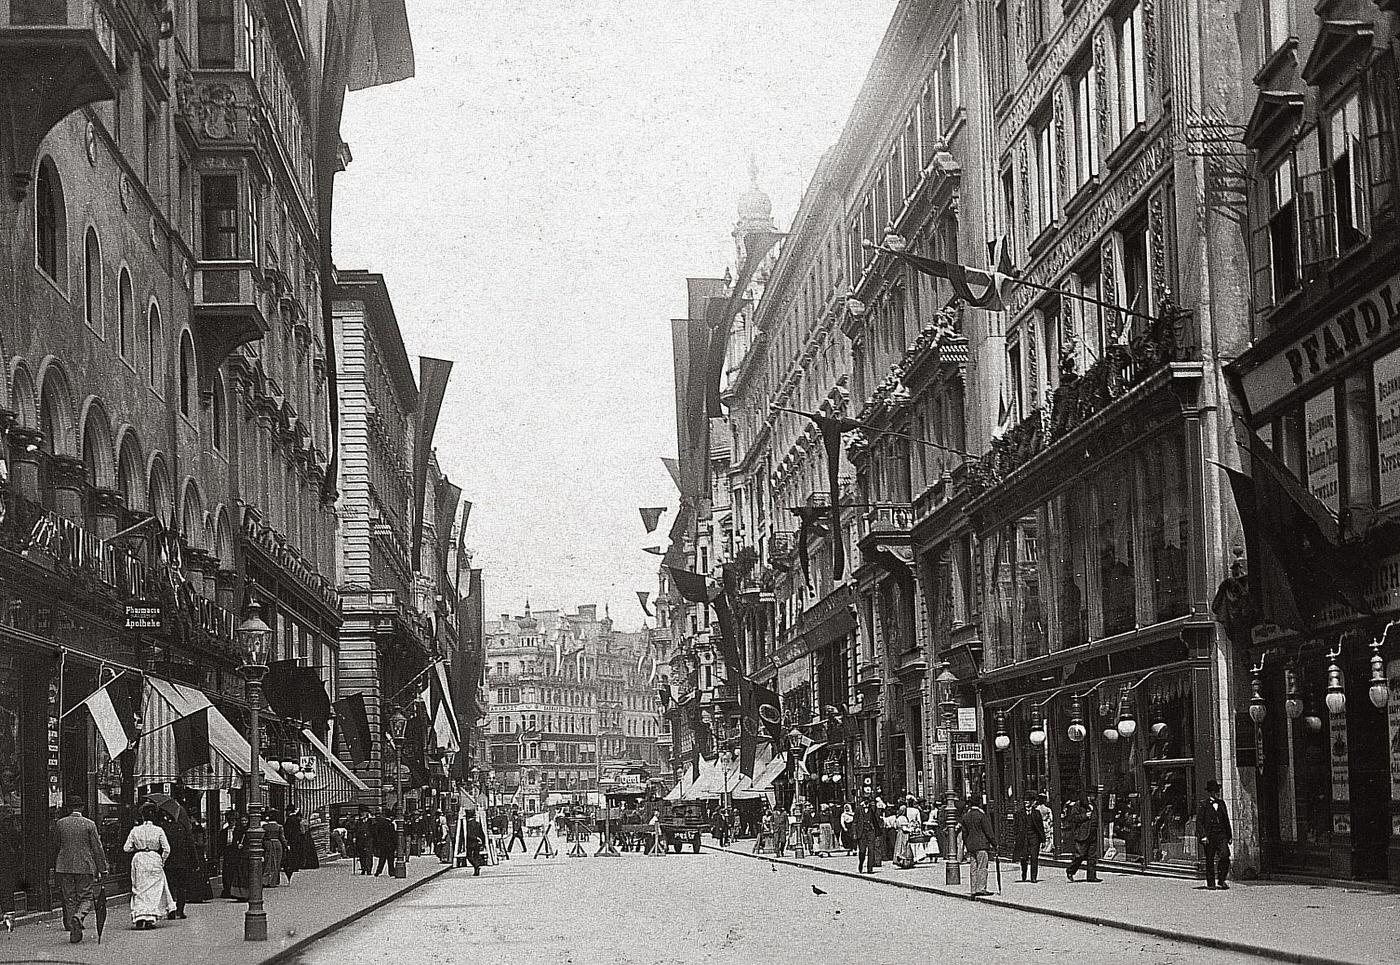 Kaerntner Street towards St. Stephan's square, 1905